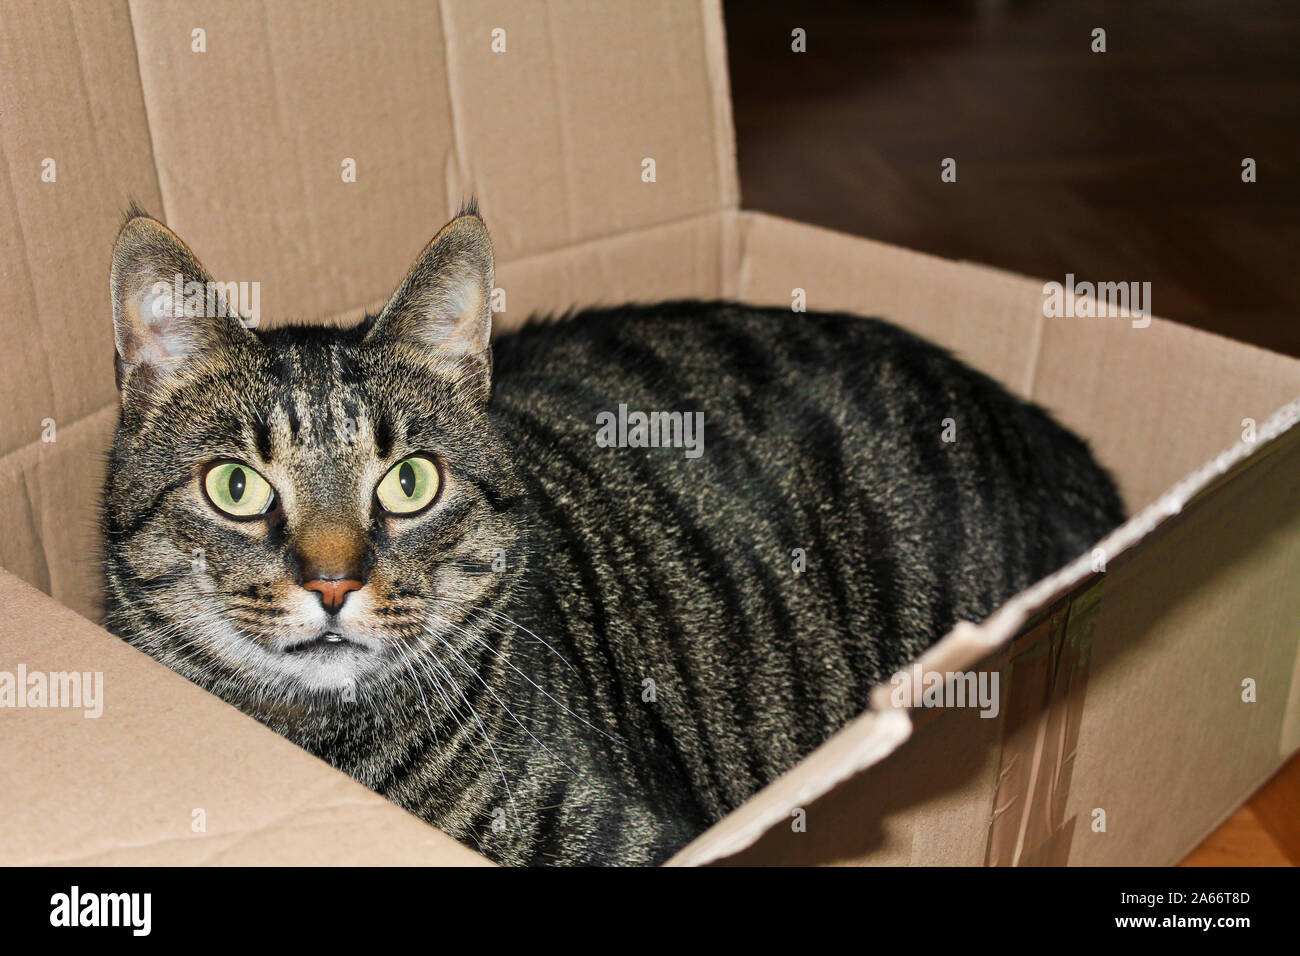 Eine Katze in eine Kiste oder ein Paket. Katzen lieben Verpackung  Stockfotografie - Alamy